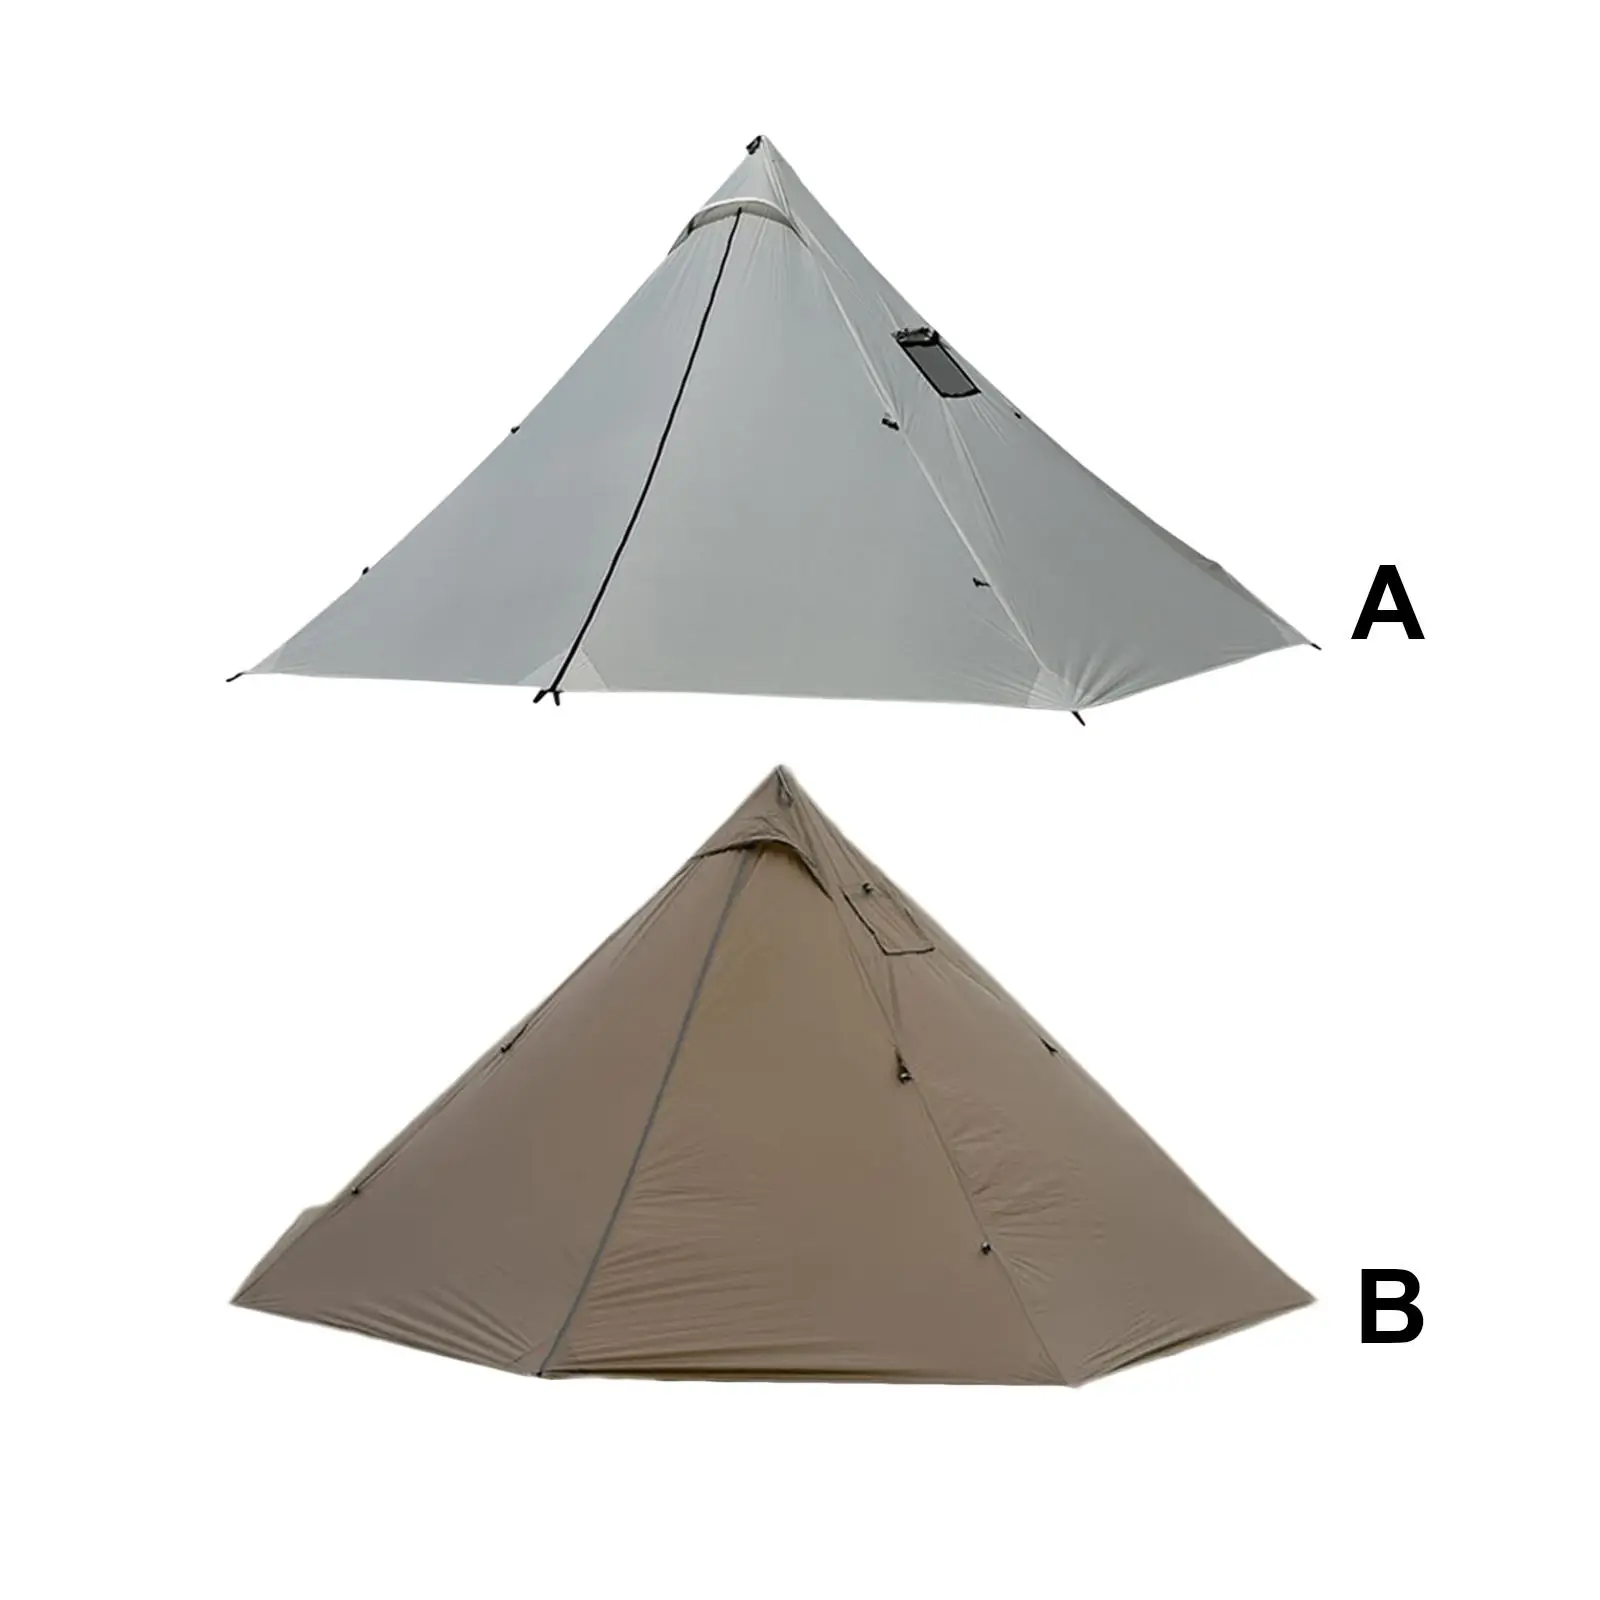 

Палатка-вигвам для кемпинга с отверстием для печки, нагревательная палатка для пешего туризма